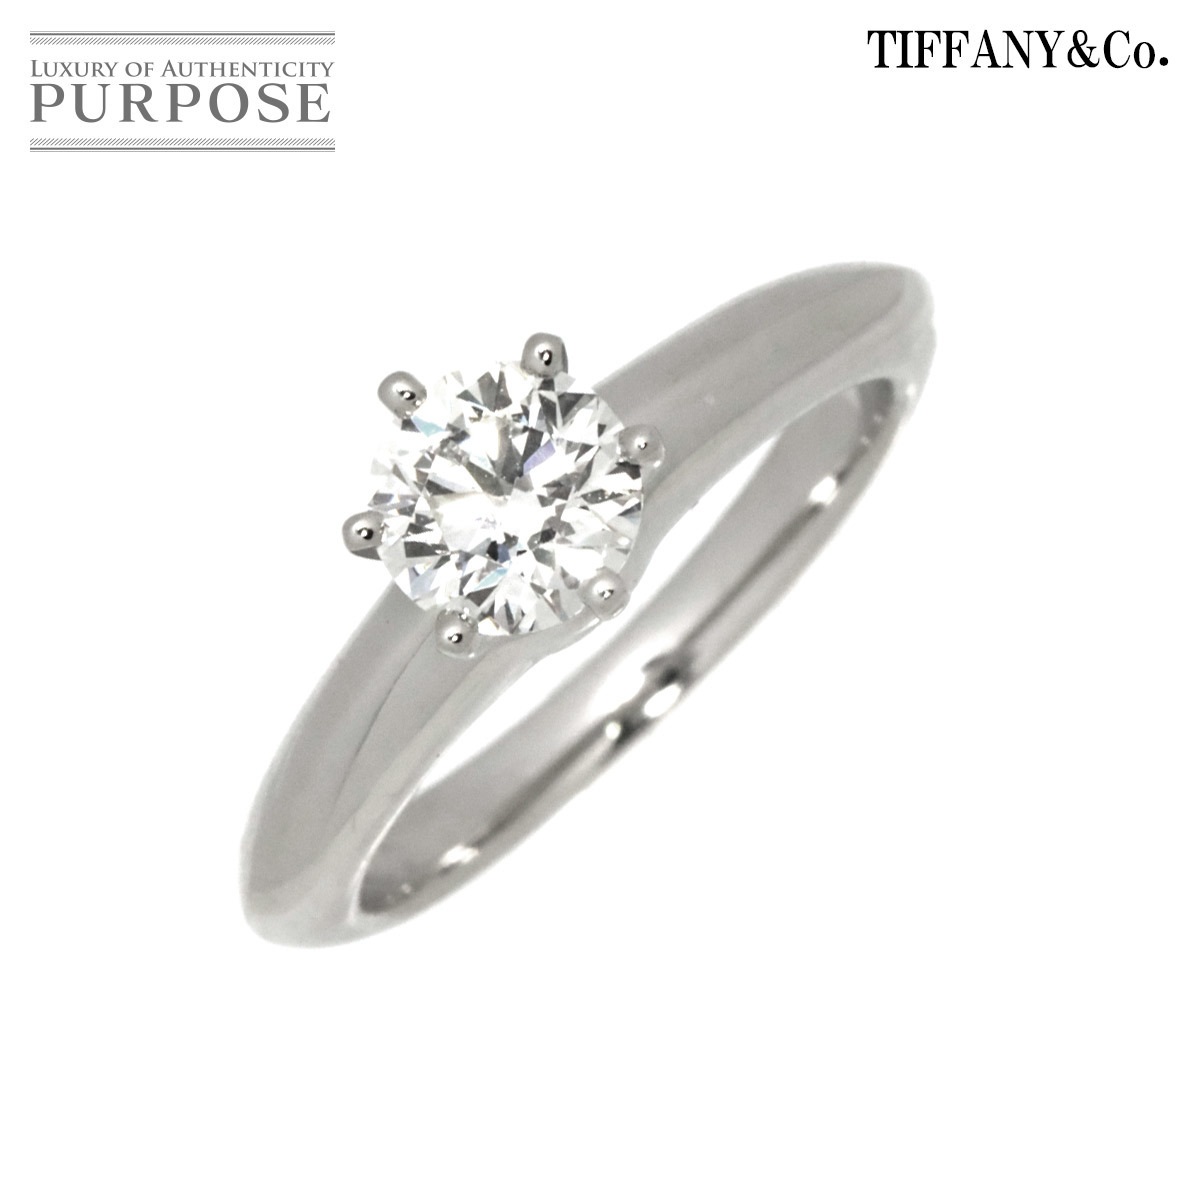 ティファニー TIFFANY&Co. ソリティア ダイヤ 0.57ct H/VS2/EX 5.5号 リング Pt プラチナ 指輪 Diamond Ring 【鑑定書付き】 90195606